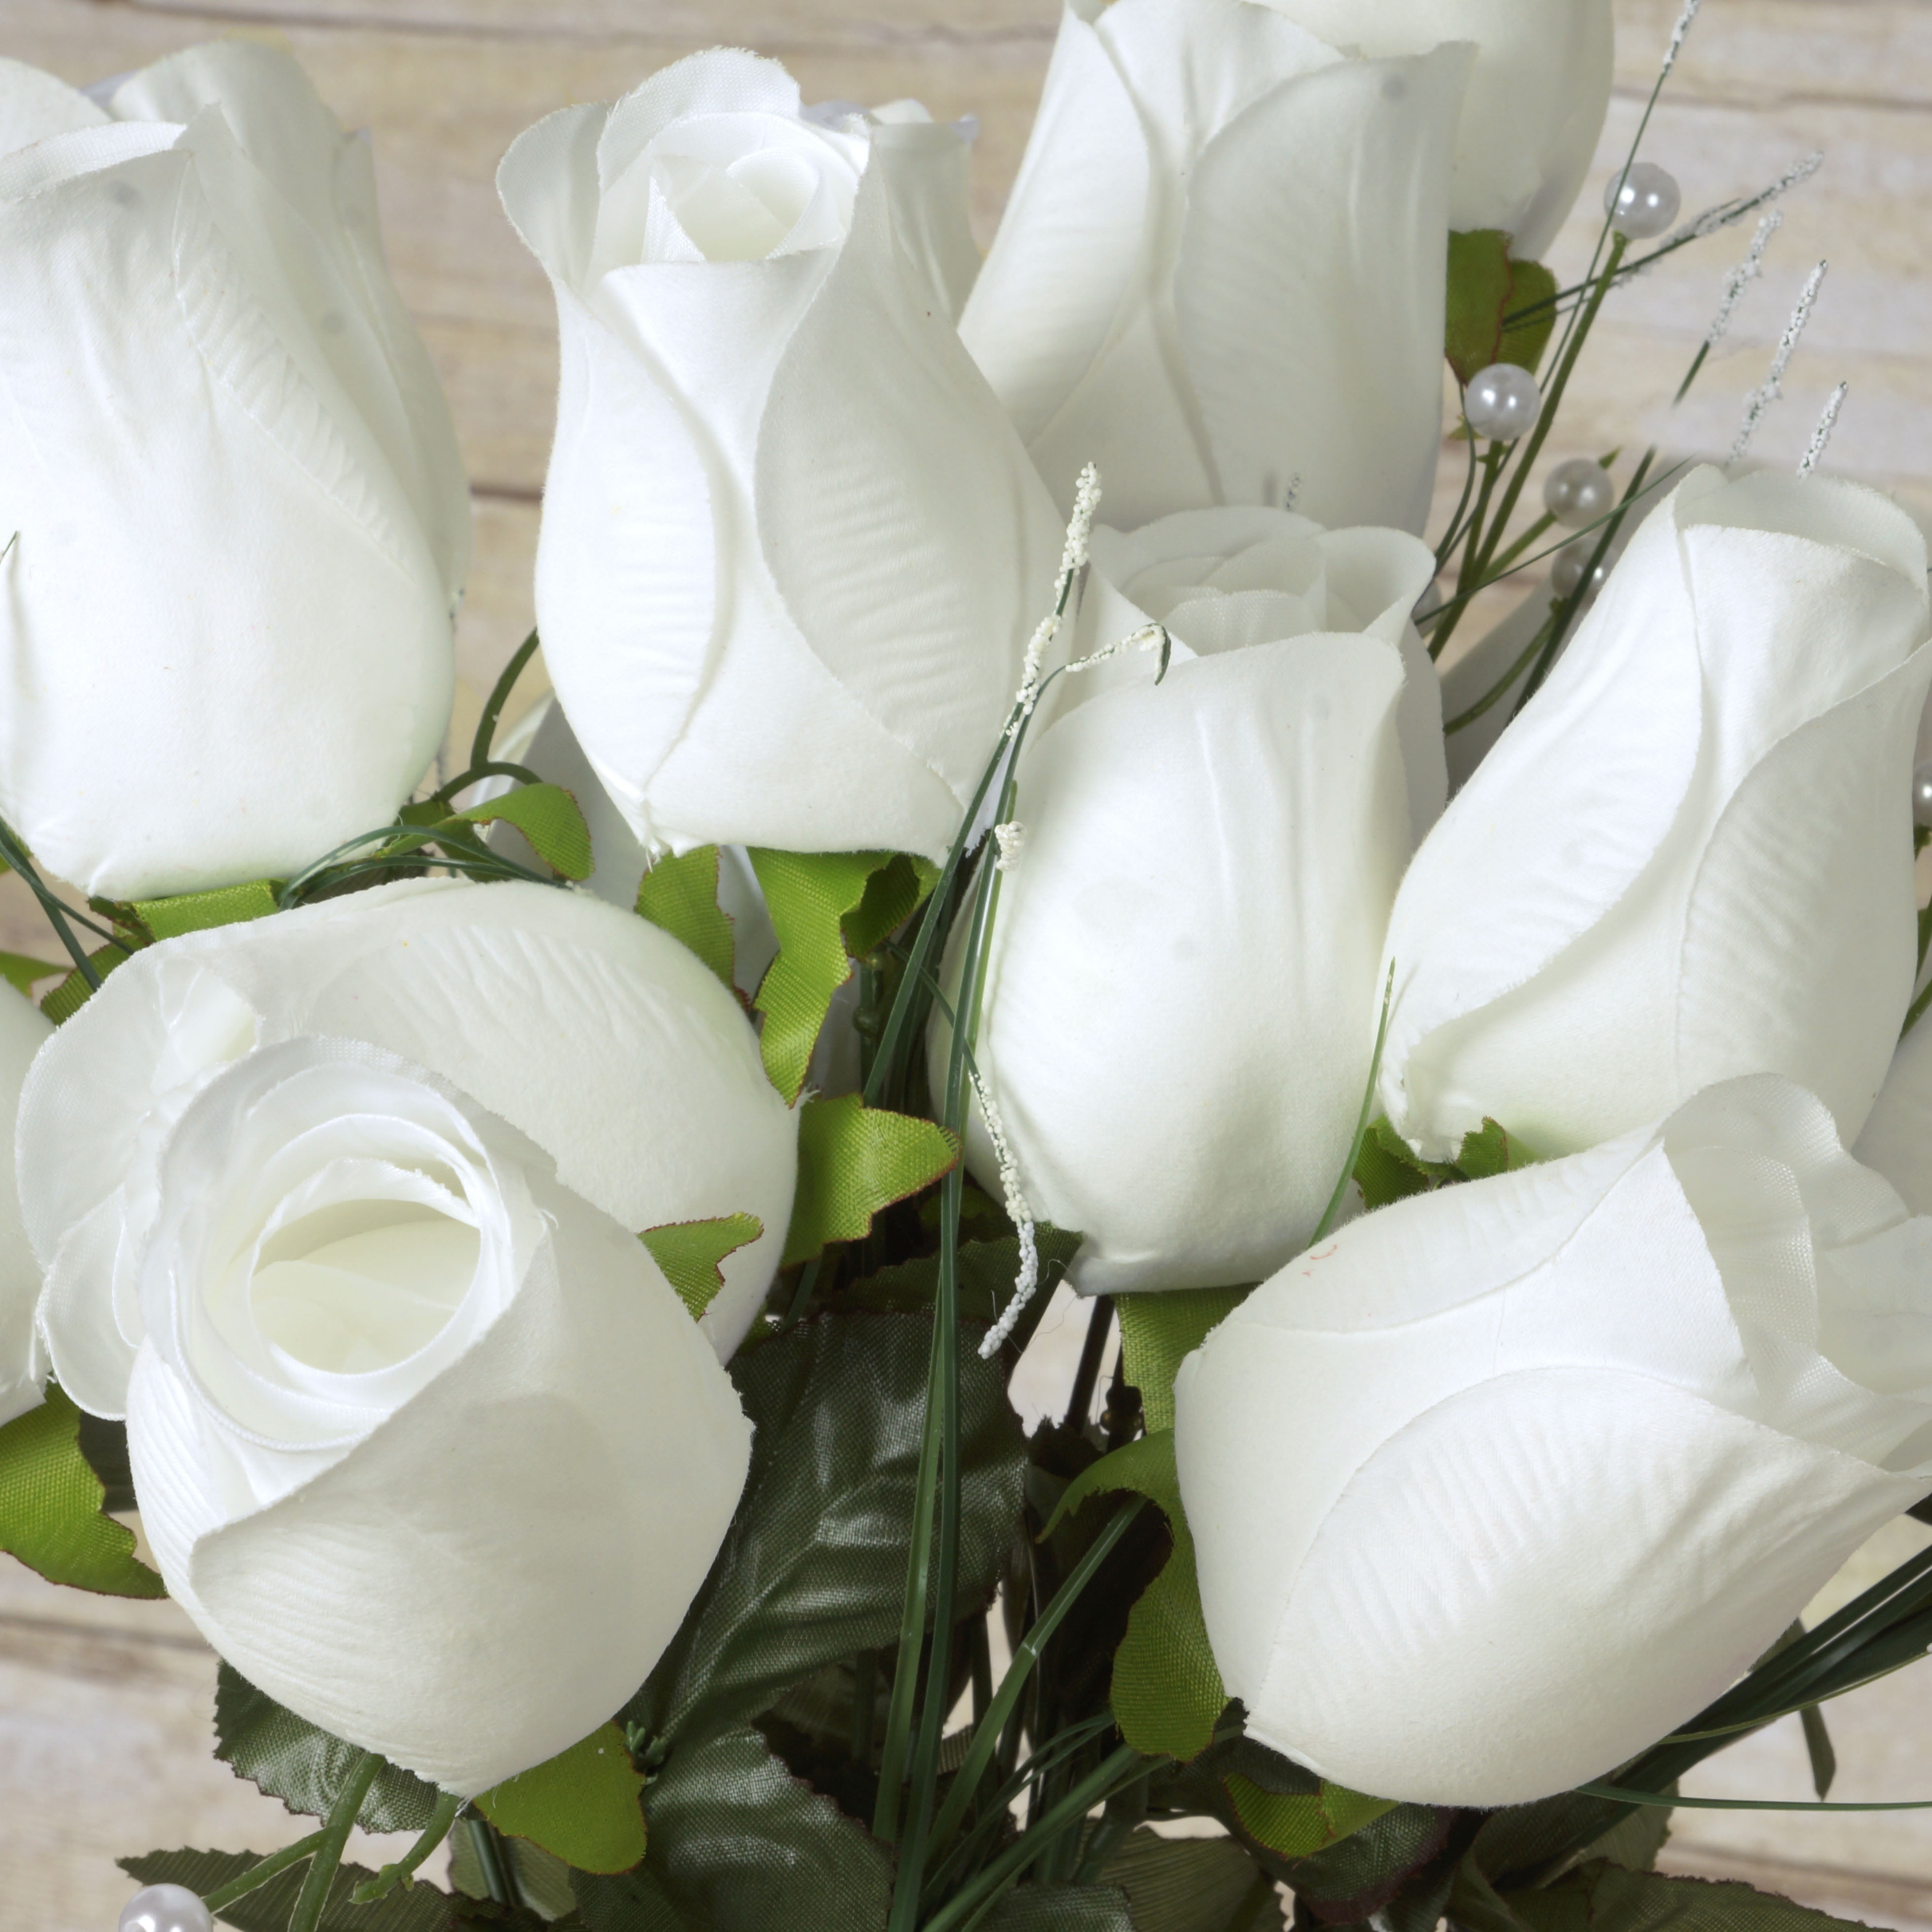 Wedding and Craft Flowers For Decor 84 Giant Velvet Rose Buds on Long Stems 